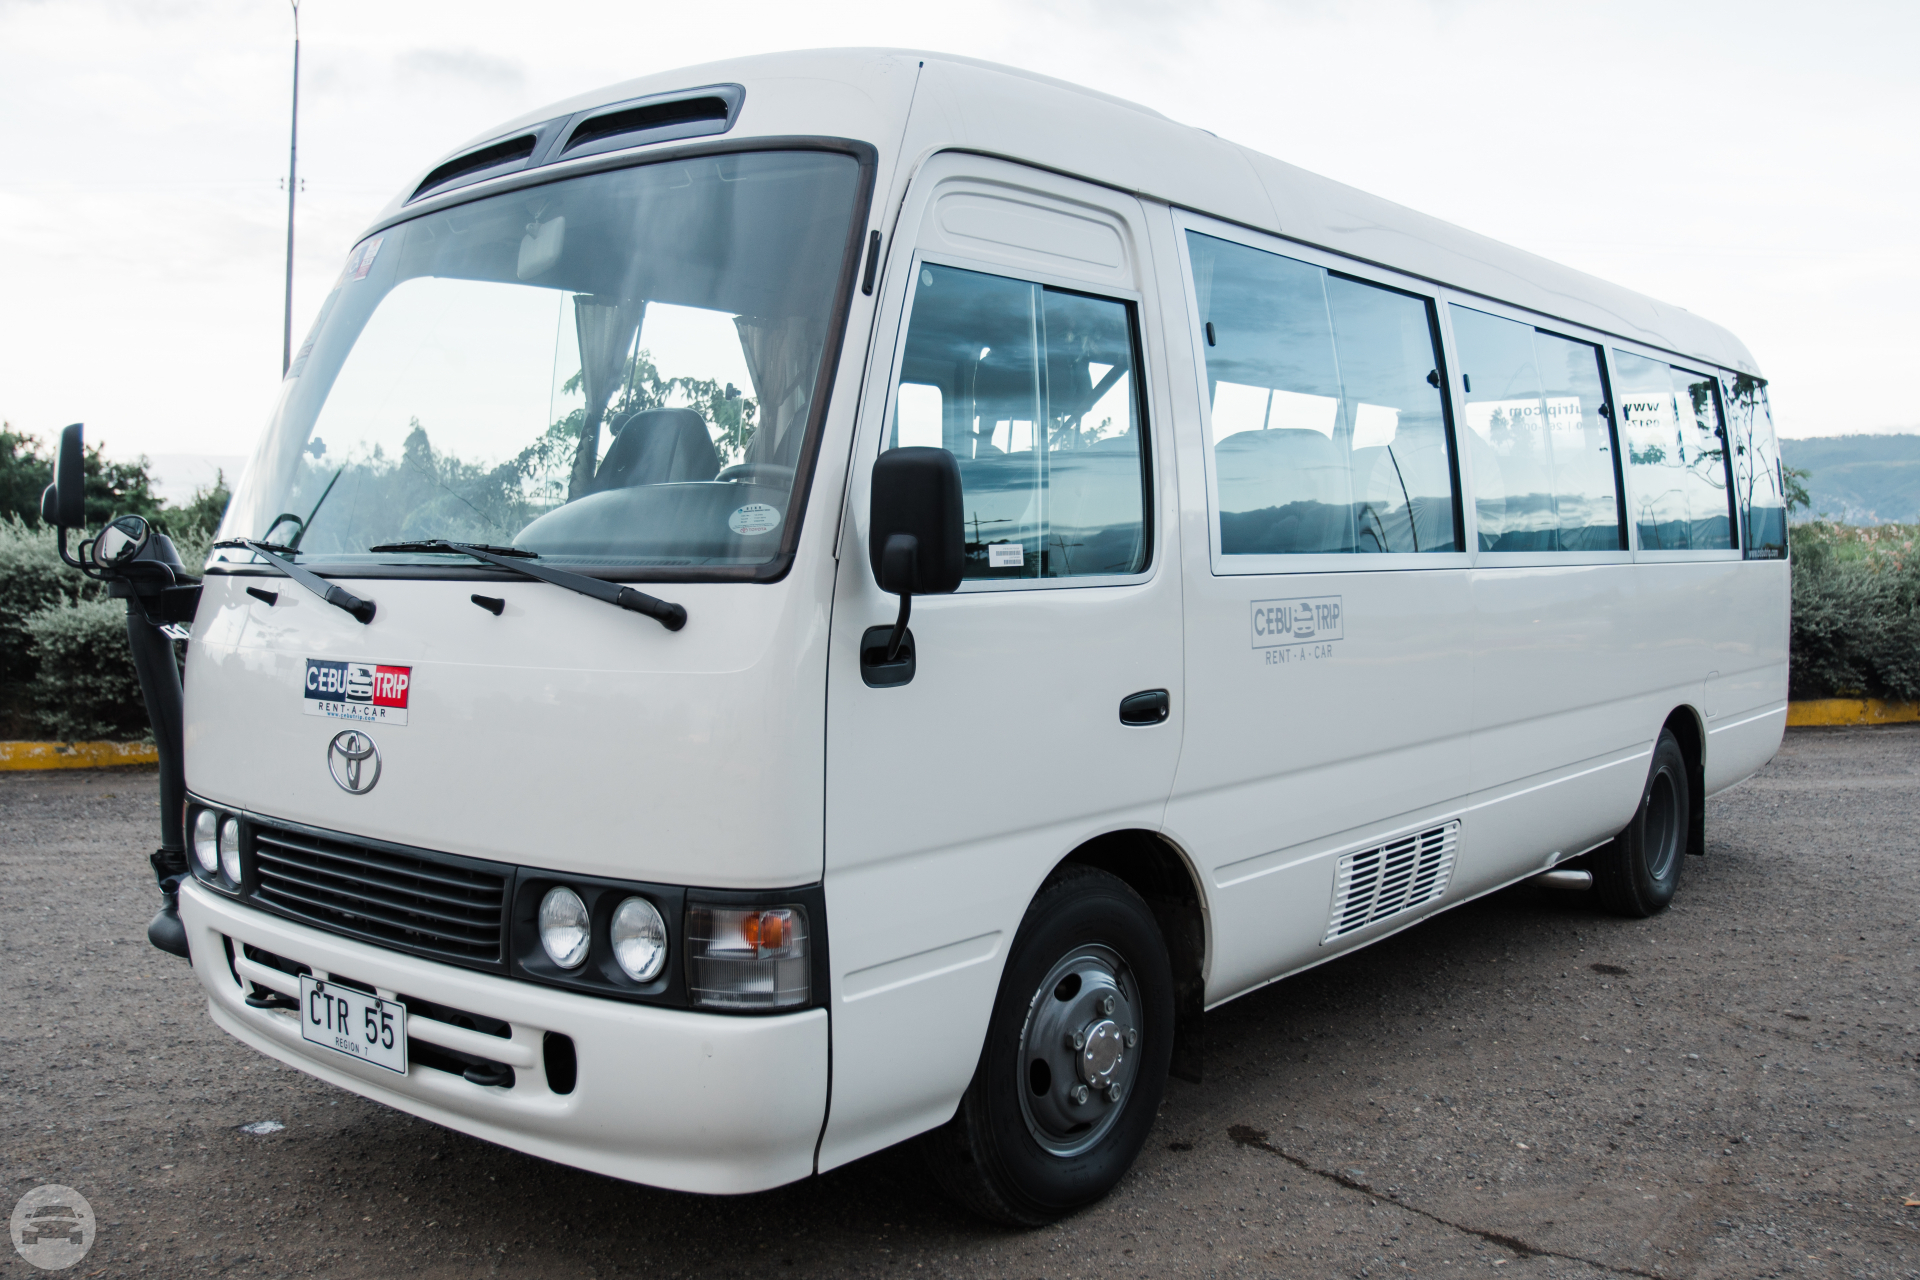 Toyota Coaster
Coach Bus /
Mandaue City, Cebu

 / Hourly (City Tour) ₱3,500.00
 / Airport Transfer ₱2,300.00
 / Daily ₱8,500.00
